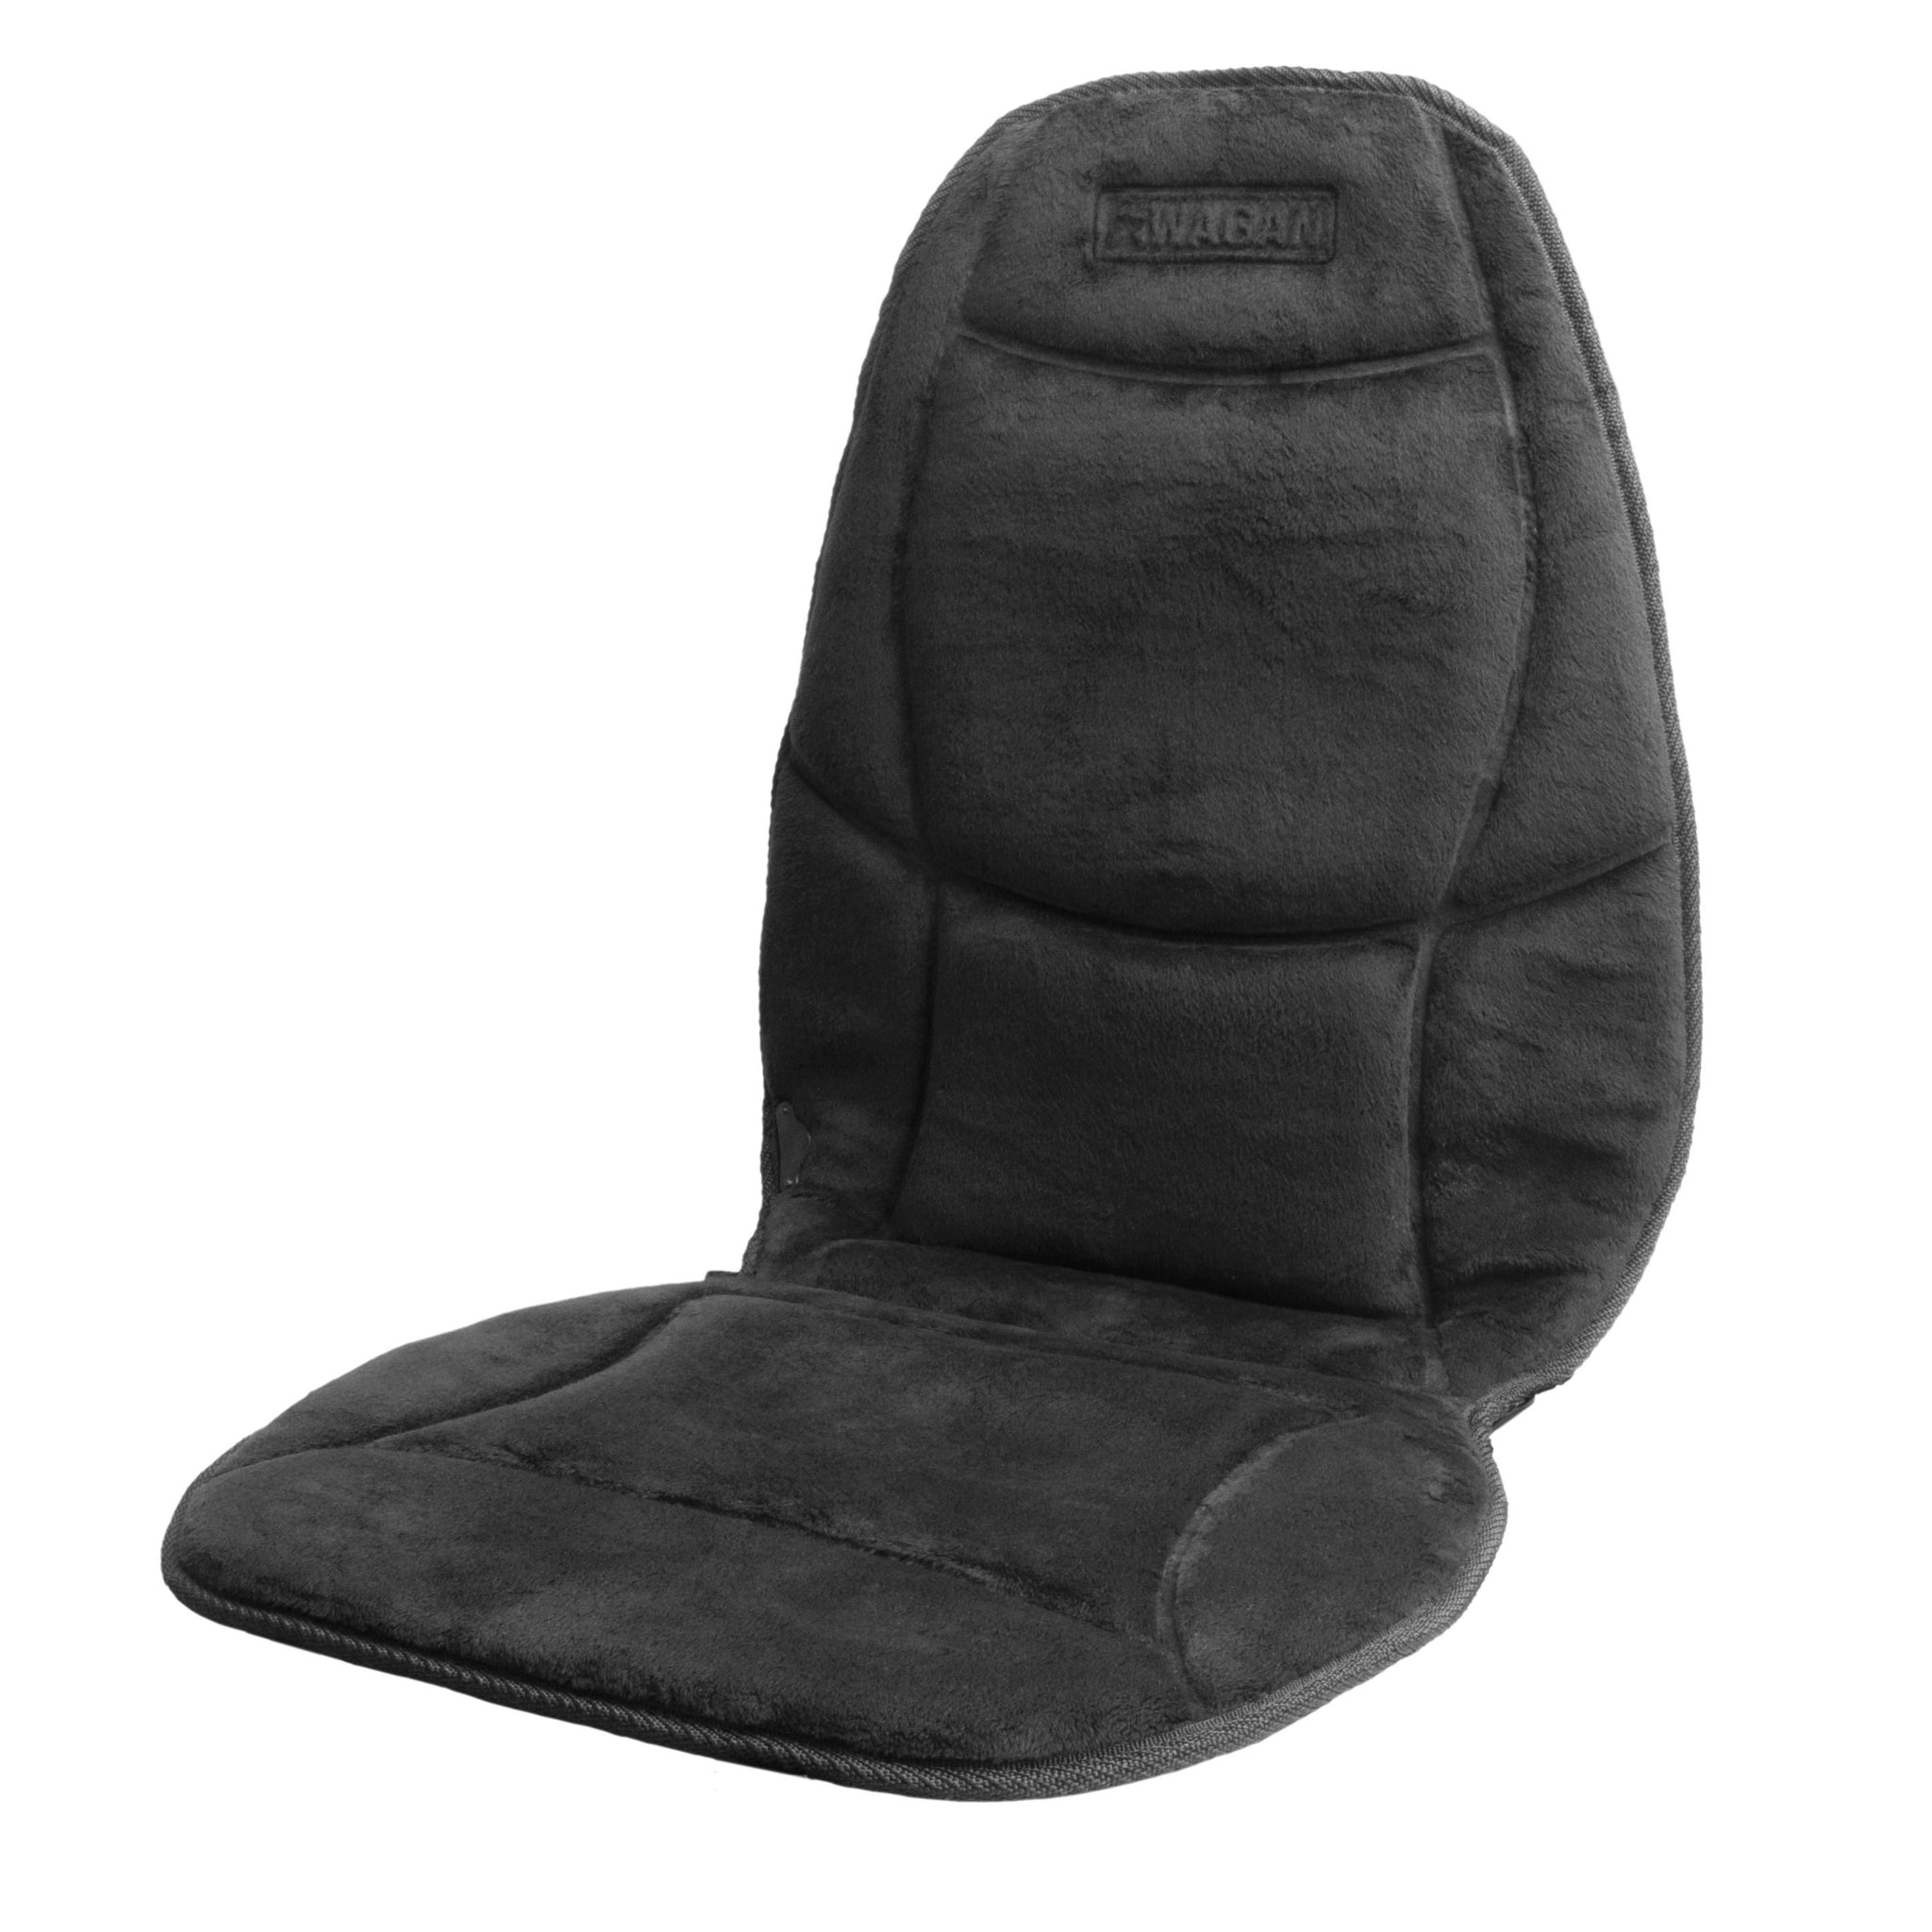 Cool Air Car Cushion, Comfort, Wagan Healthmate